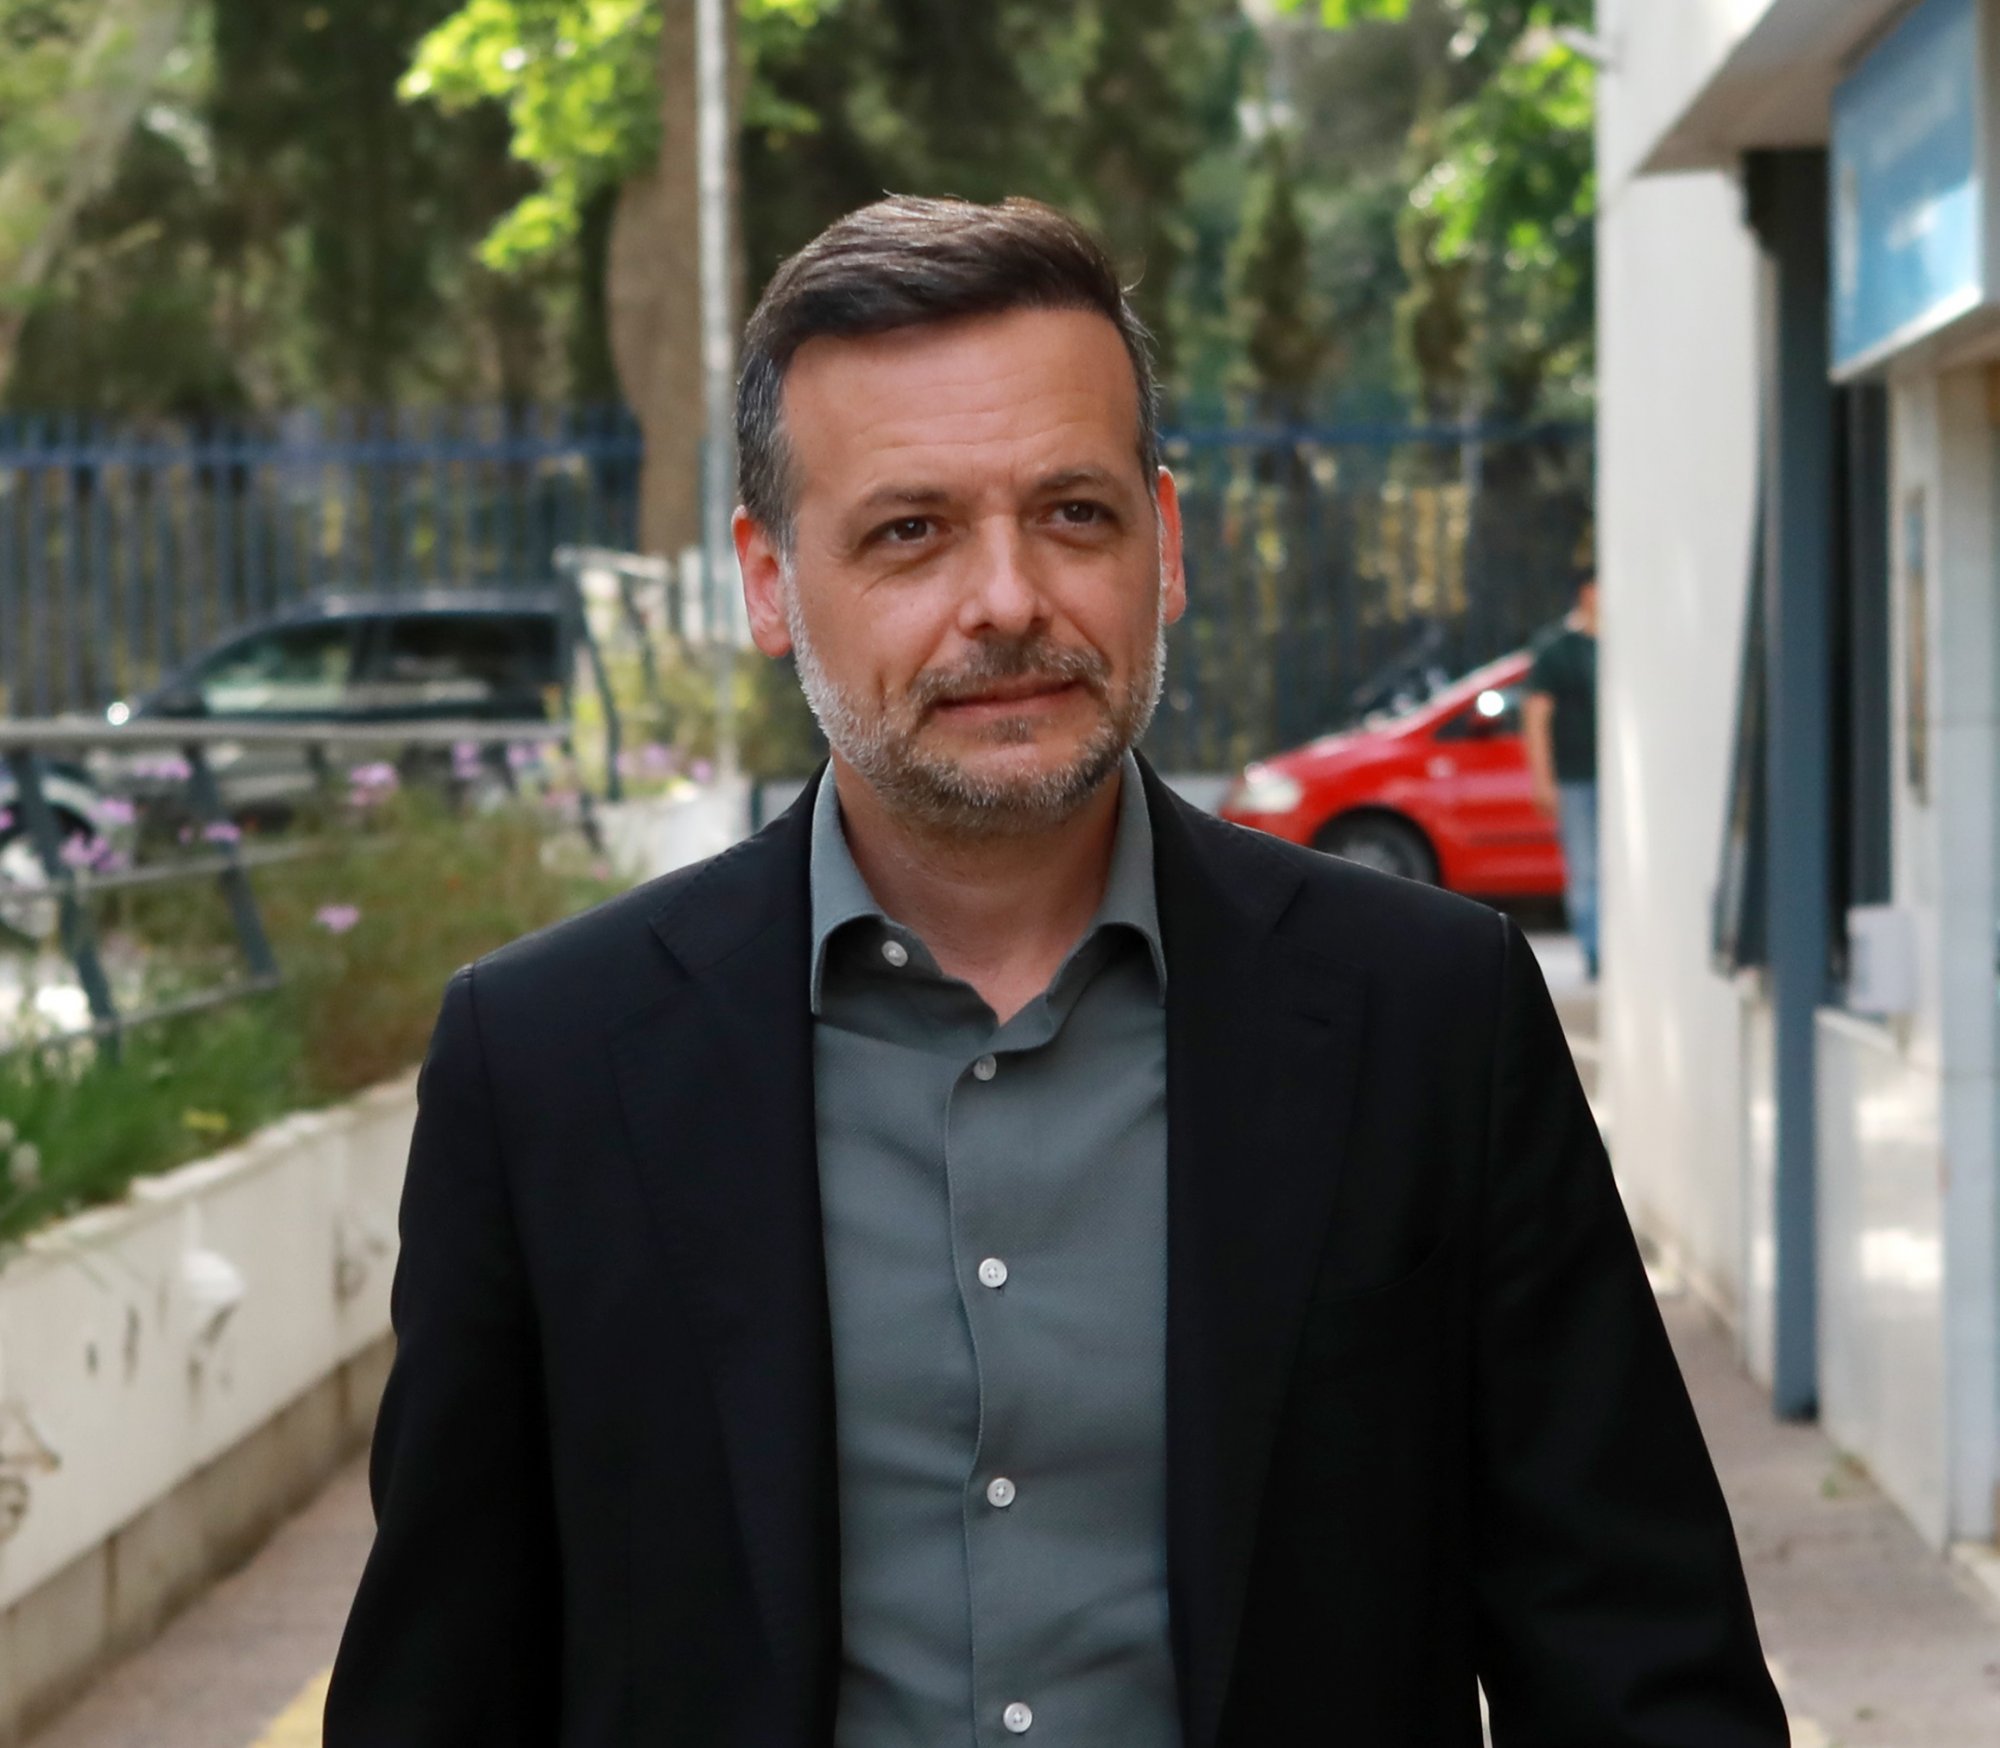 Μακάρι ο Χάρης Δούκας να είναι υποψήφιος πρόεδρος του ΠΑΣΟΚ, λέει ο Κωνσταντινόπουλος